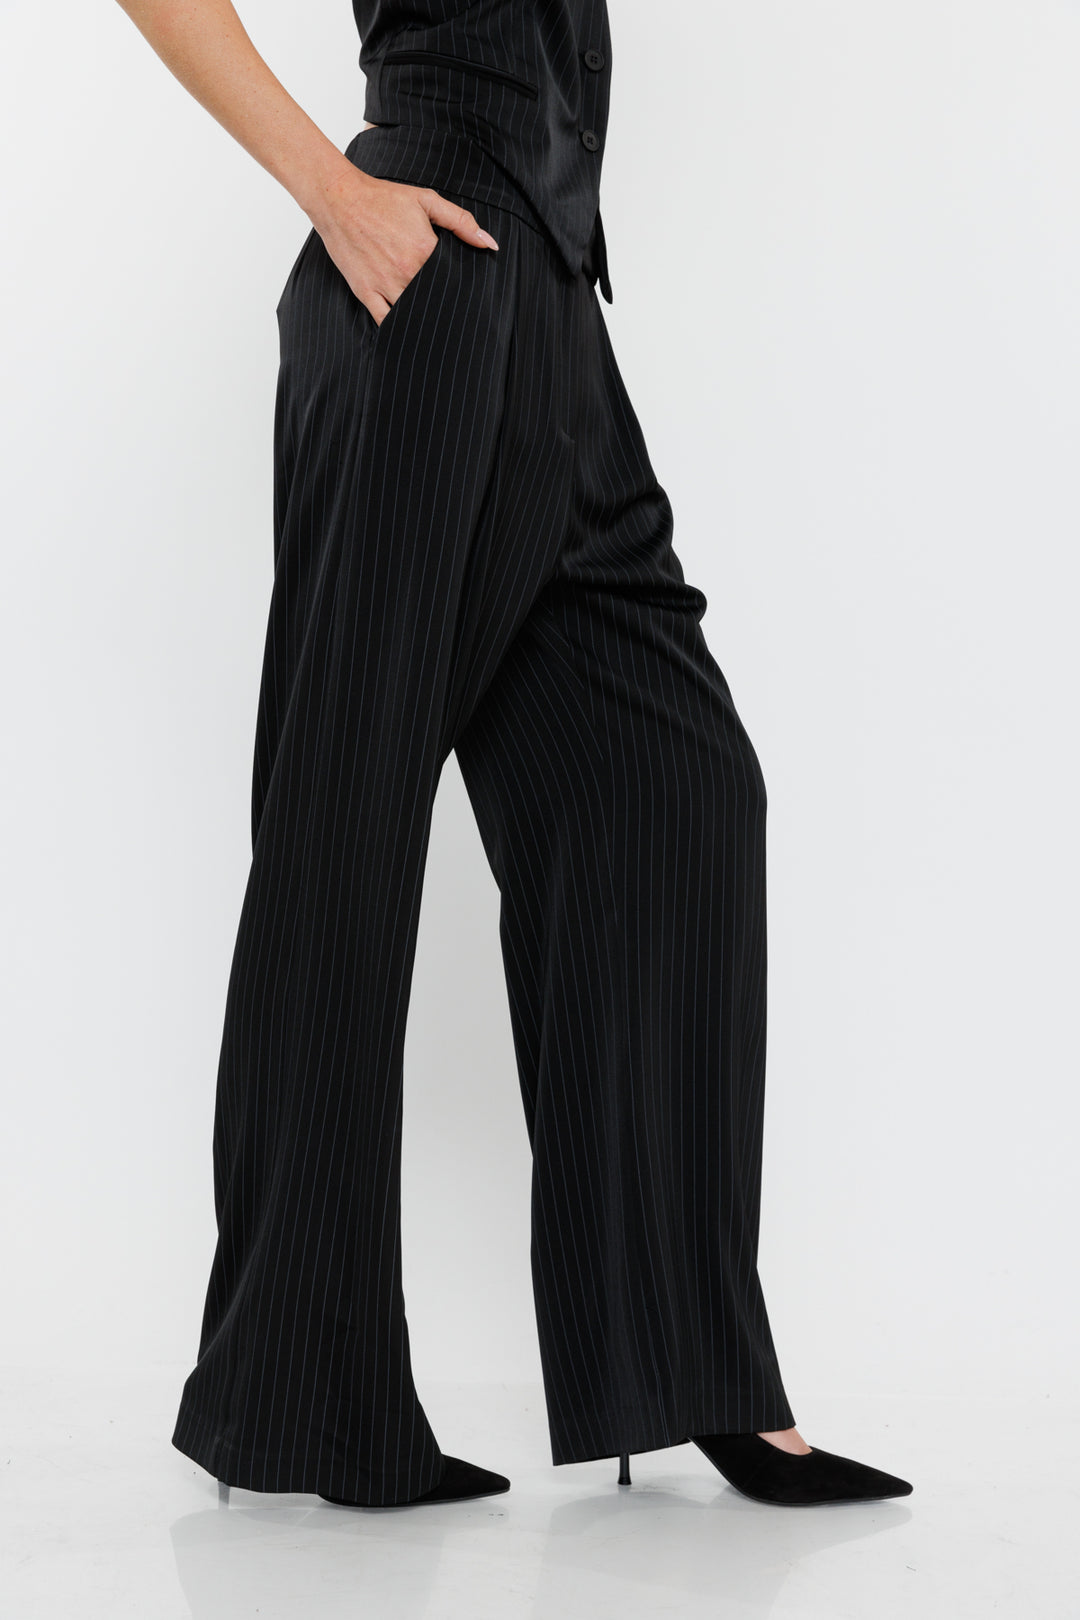 מכנסיים רחבים Vera בצבע שחור/פינסטרייפ